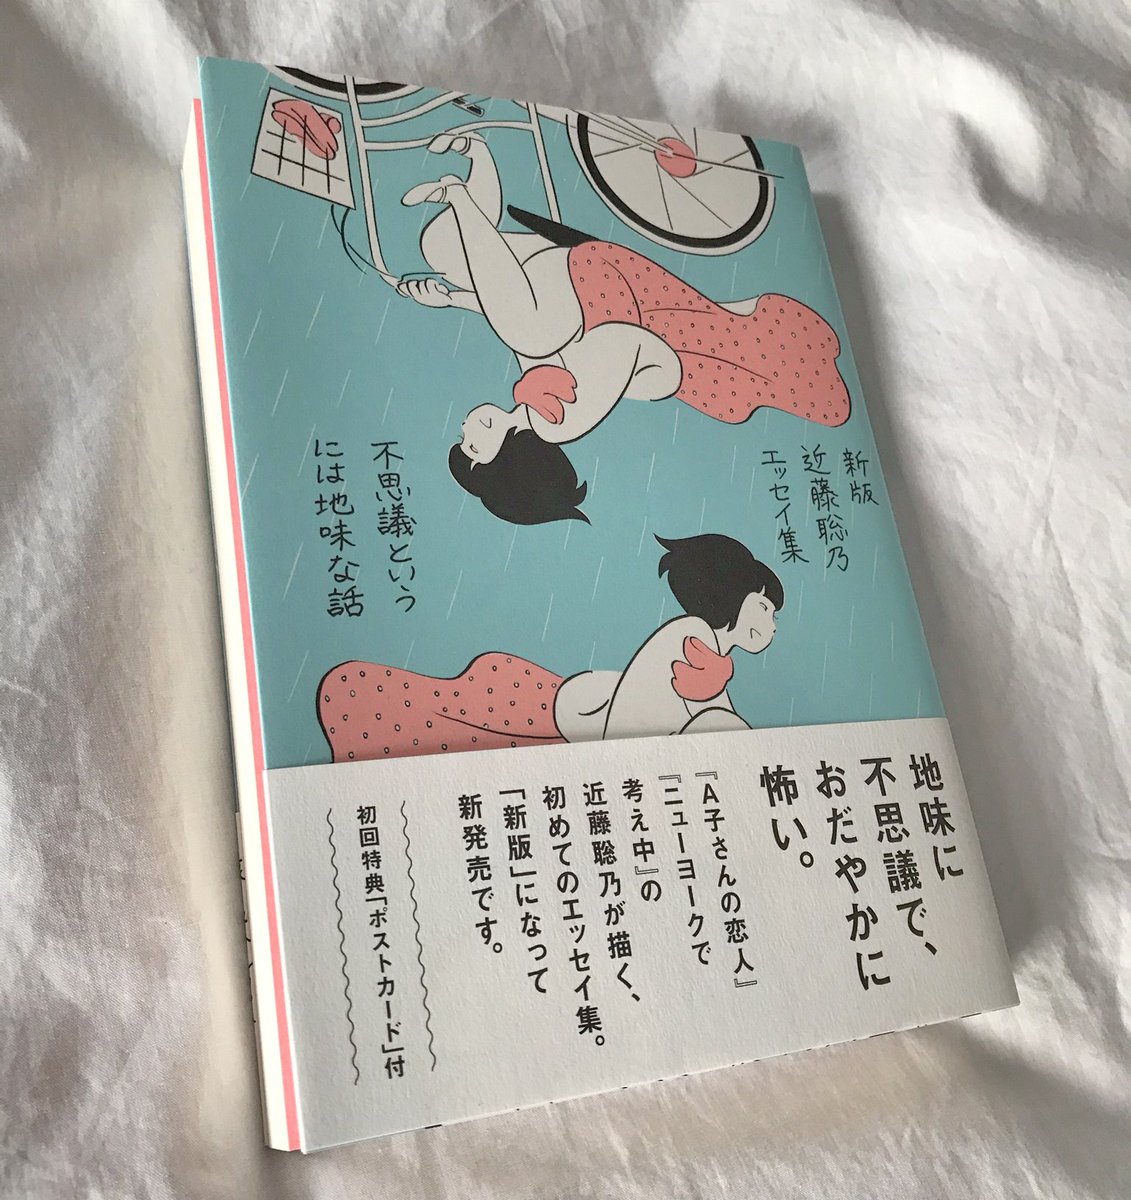 『新版 近藤聡乃エッセイ集  不思議というには地味な話』発売中。エッセイ集が新版となってリニューアル刊行しました。初版分には挿し絵のポストカードが1枚付いています。
新版はピンクの見返しが新鮮です。 